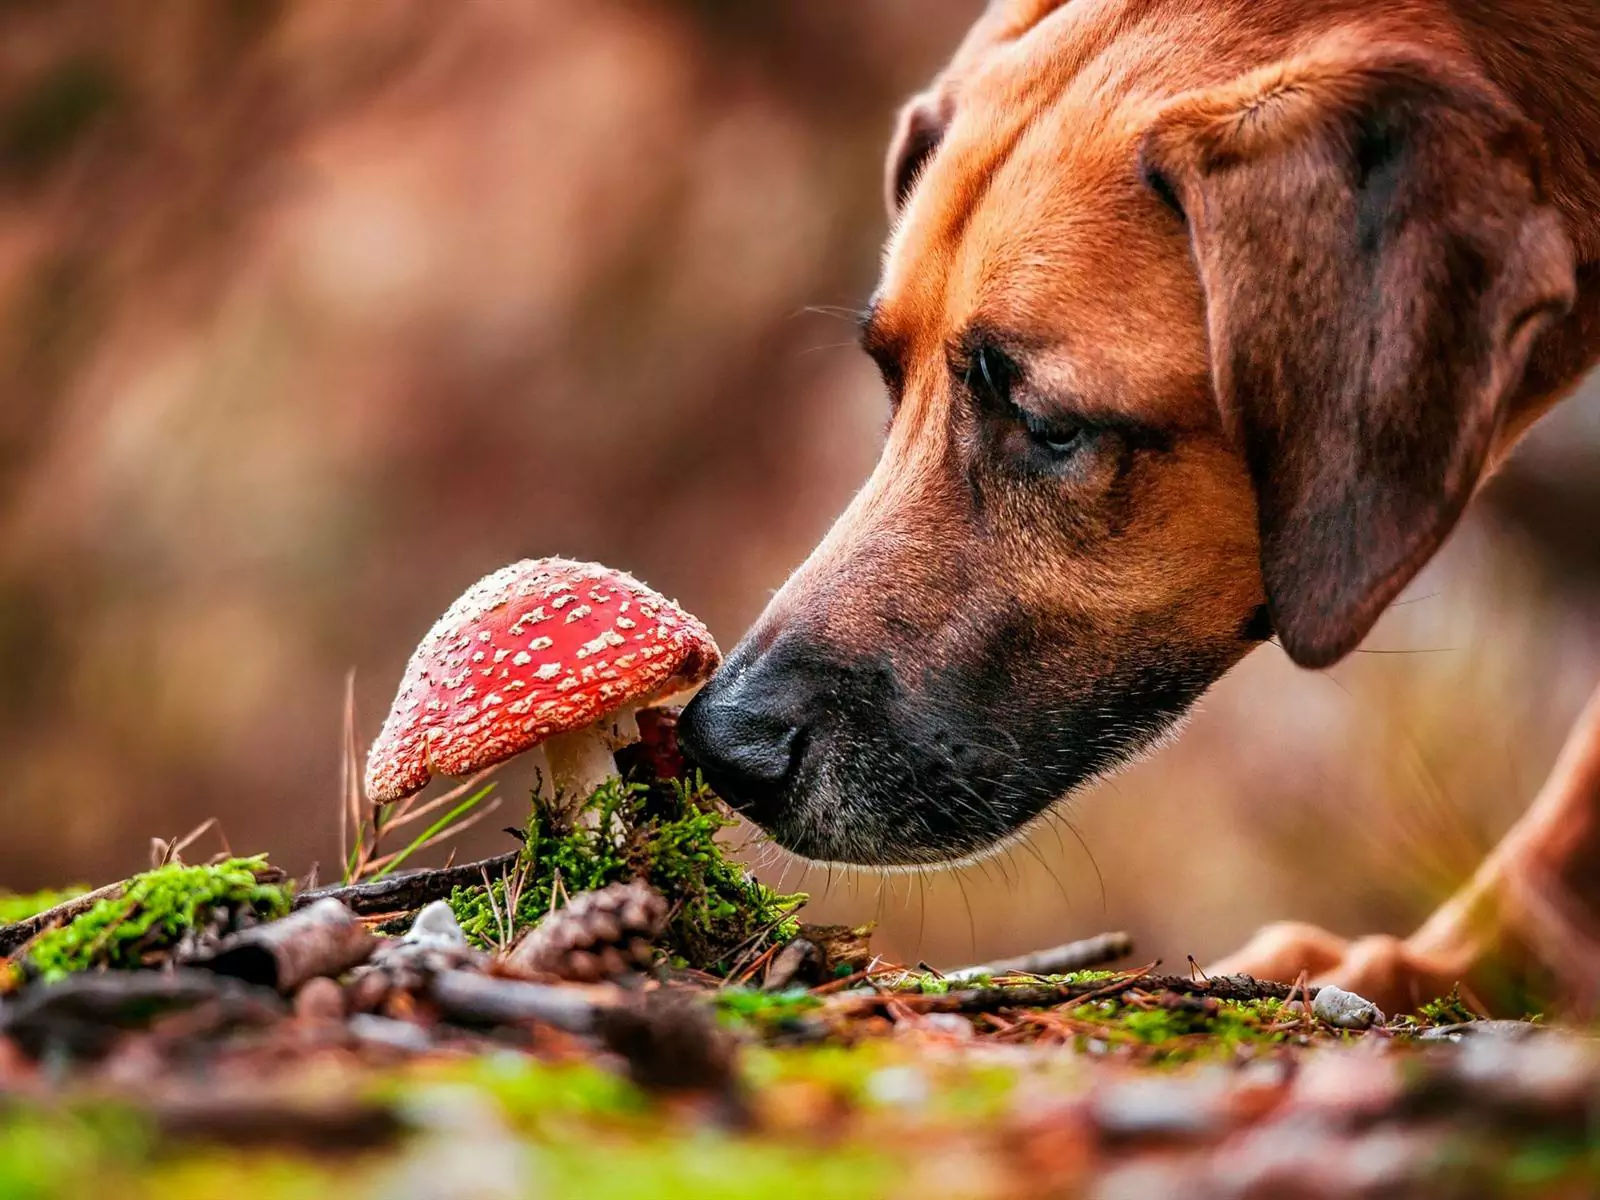 Können Hunde Pilze essen? Was ist der Nährwert von Pilzen für Hunde?